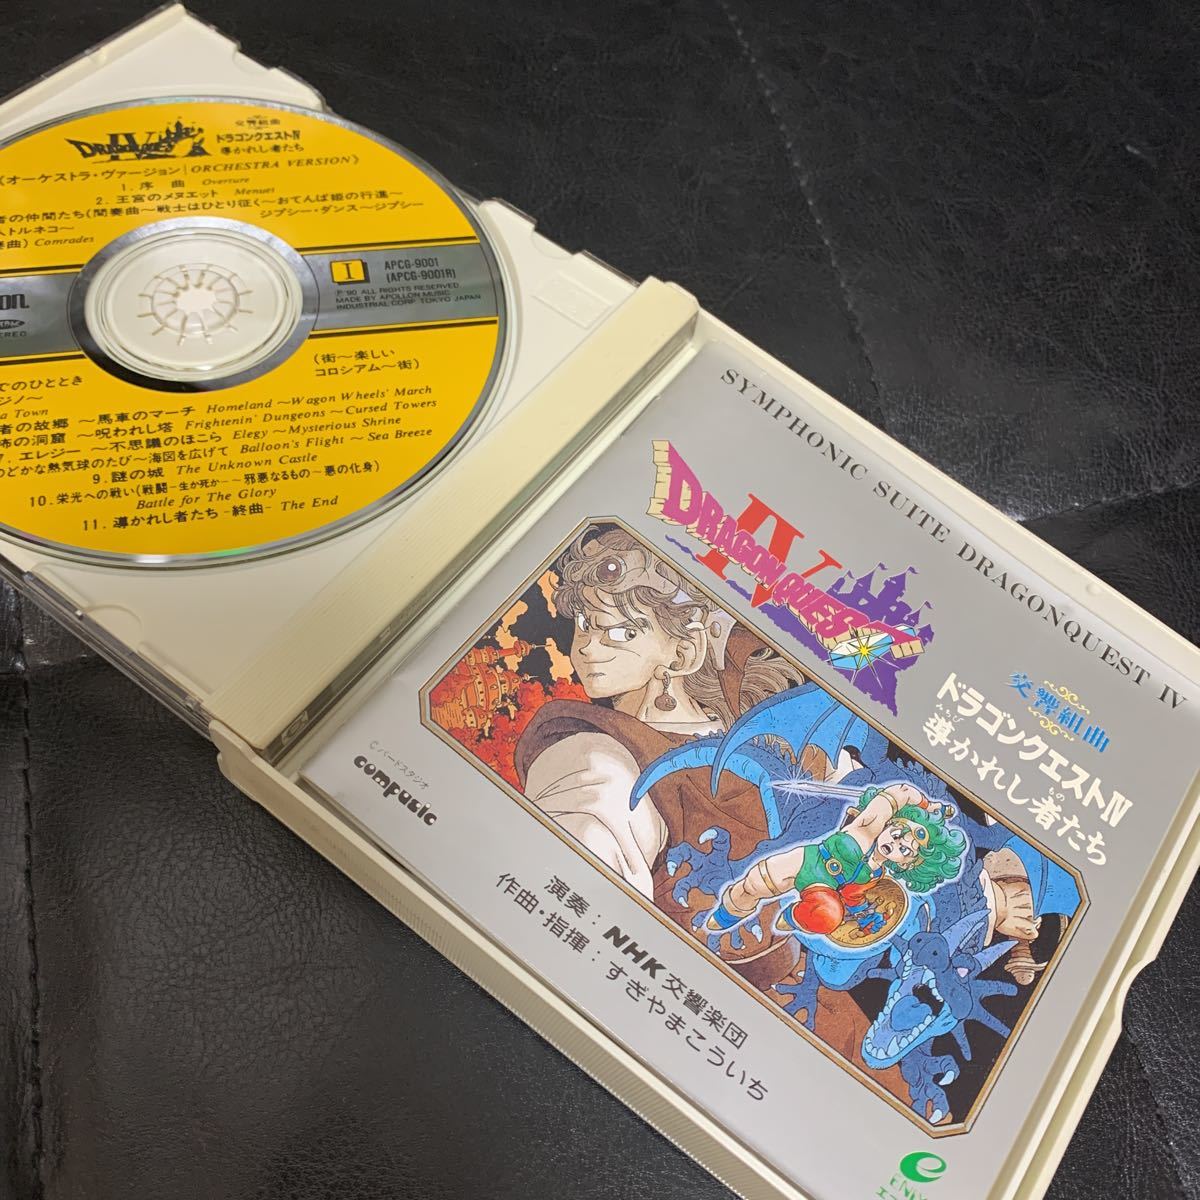  Dragon Quest 4 NHK реверберация приятный ..... человек ..........CD